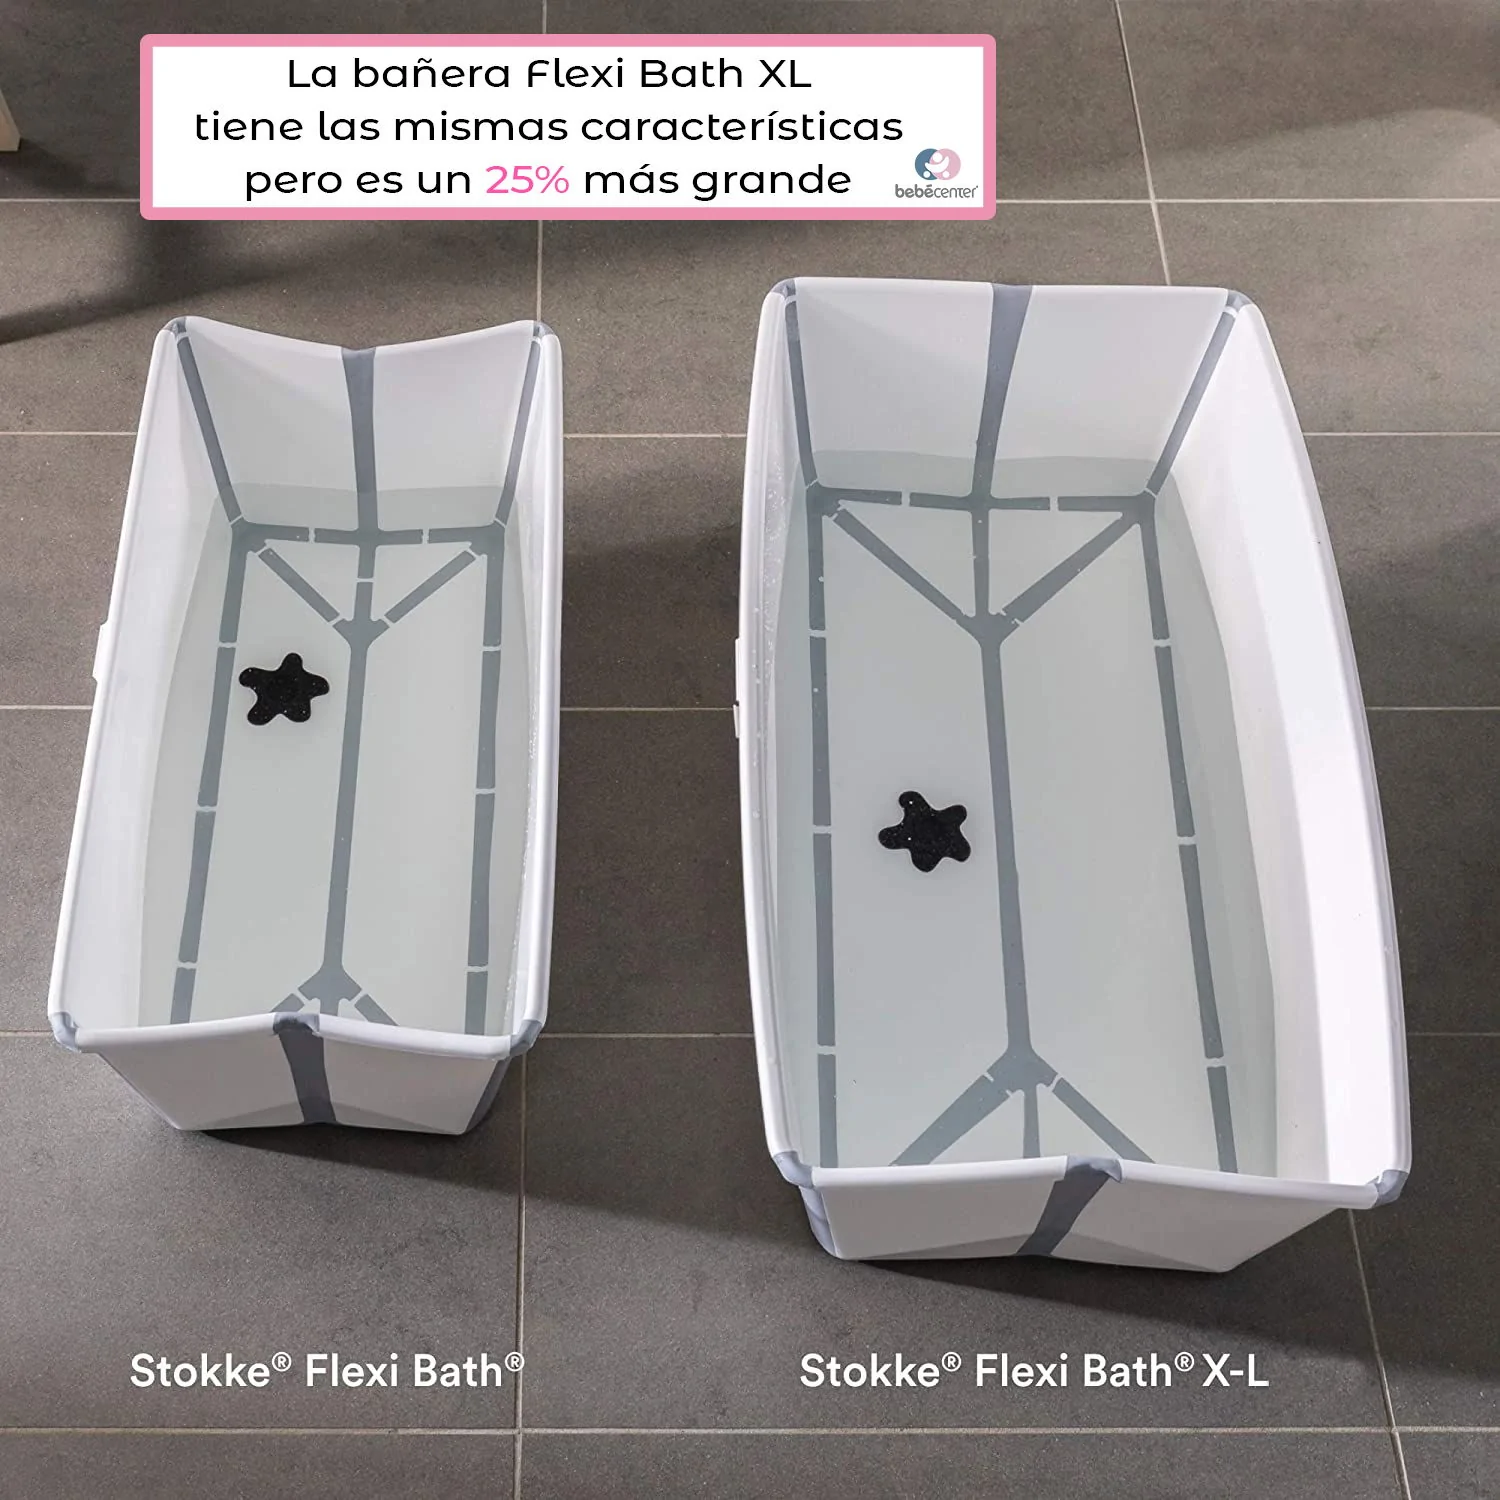 Stokke - 🛁 La Stokke® Flexi Bath® XL es una bañera espaciosa para poder  chapotear y jugar. ¿Sabías que gracias a su tamaño es apta para bañarse con  los hermanos? 👉 Más